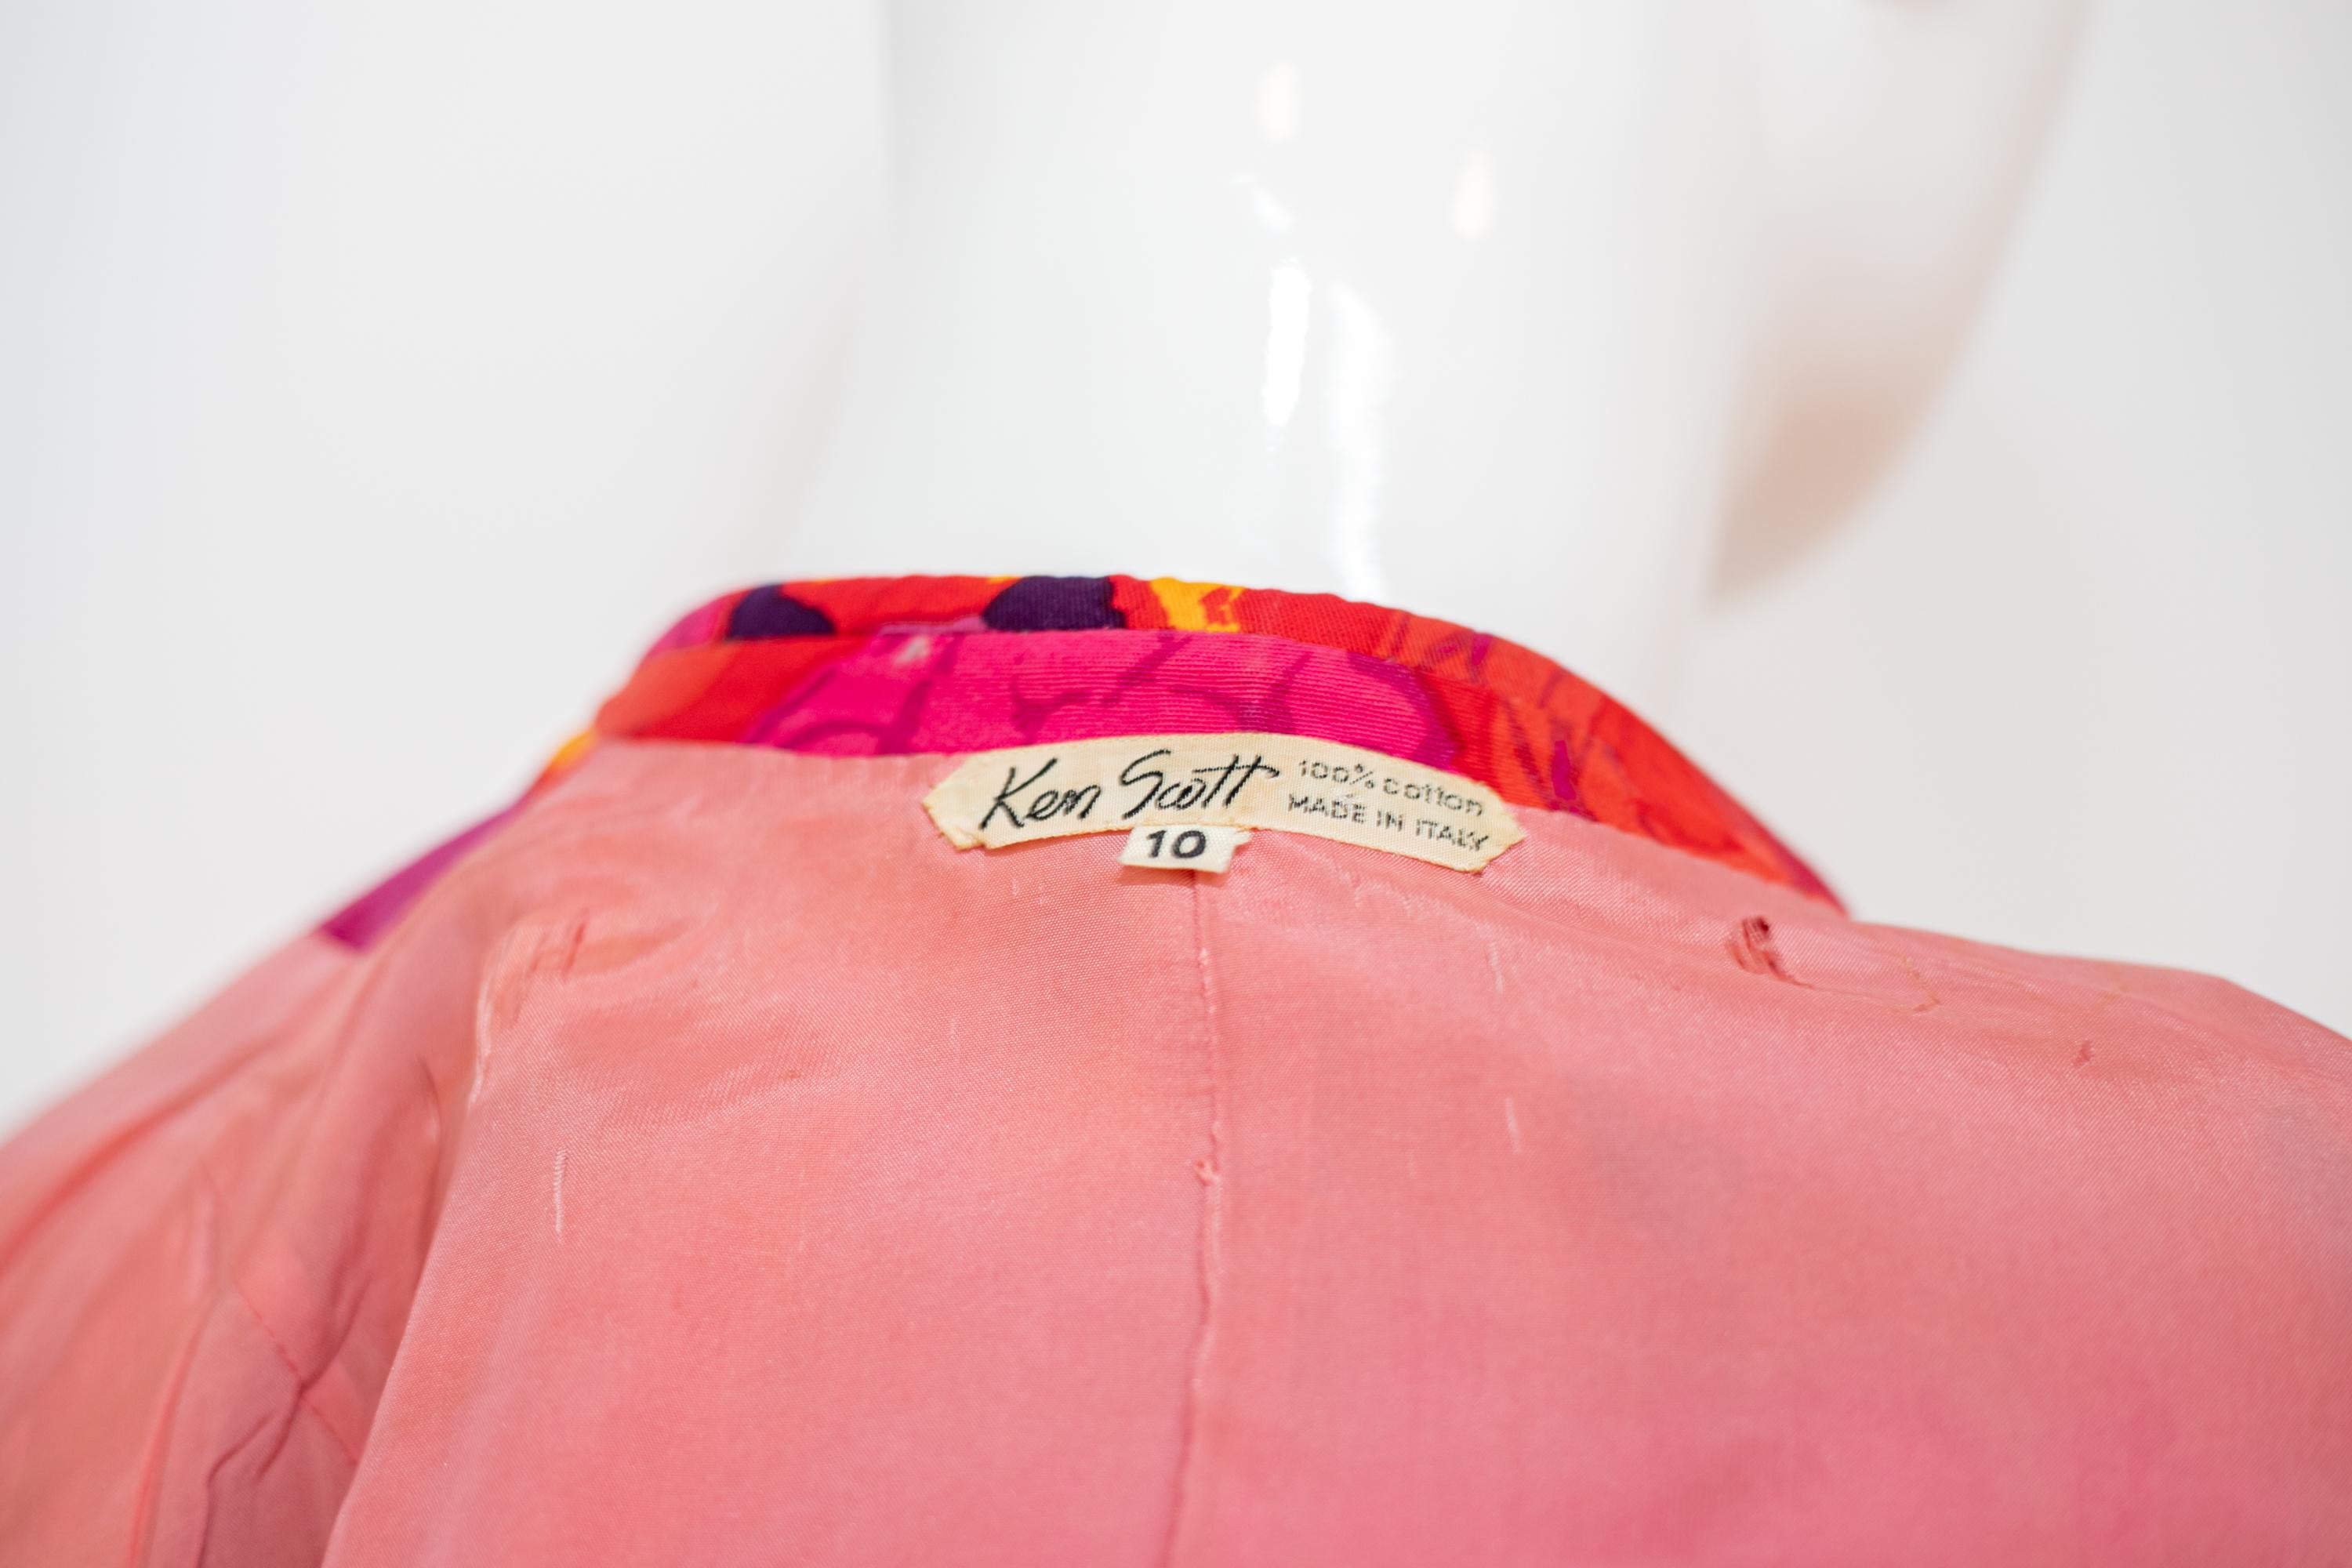 Blazer élégant en coton conçu par Ken Scott dans les années 1990, fabriqué en Italie. ÉTIQUETTE ORIGINALE.
Le blazer a une coupe classique et élégante avec un imprimé floral enjoué. Elle est entièrement réalisée en coton.
Il a des manches longues et